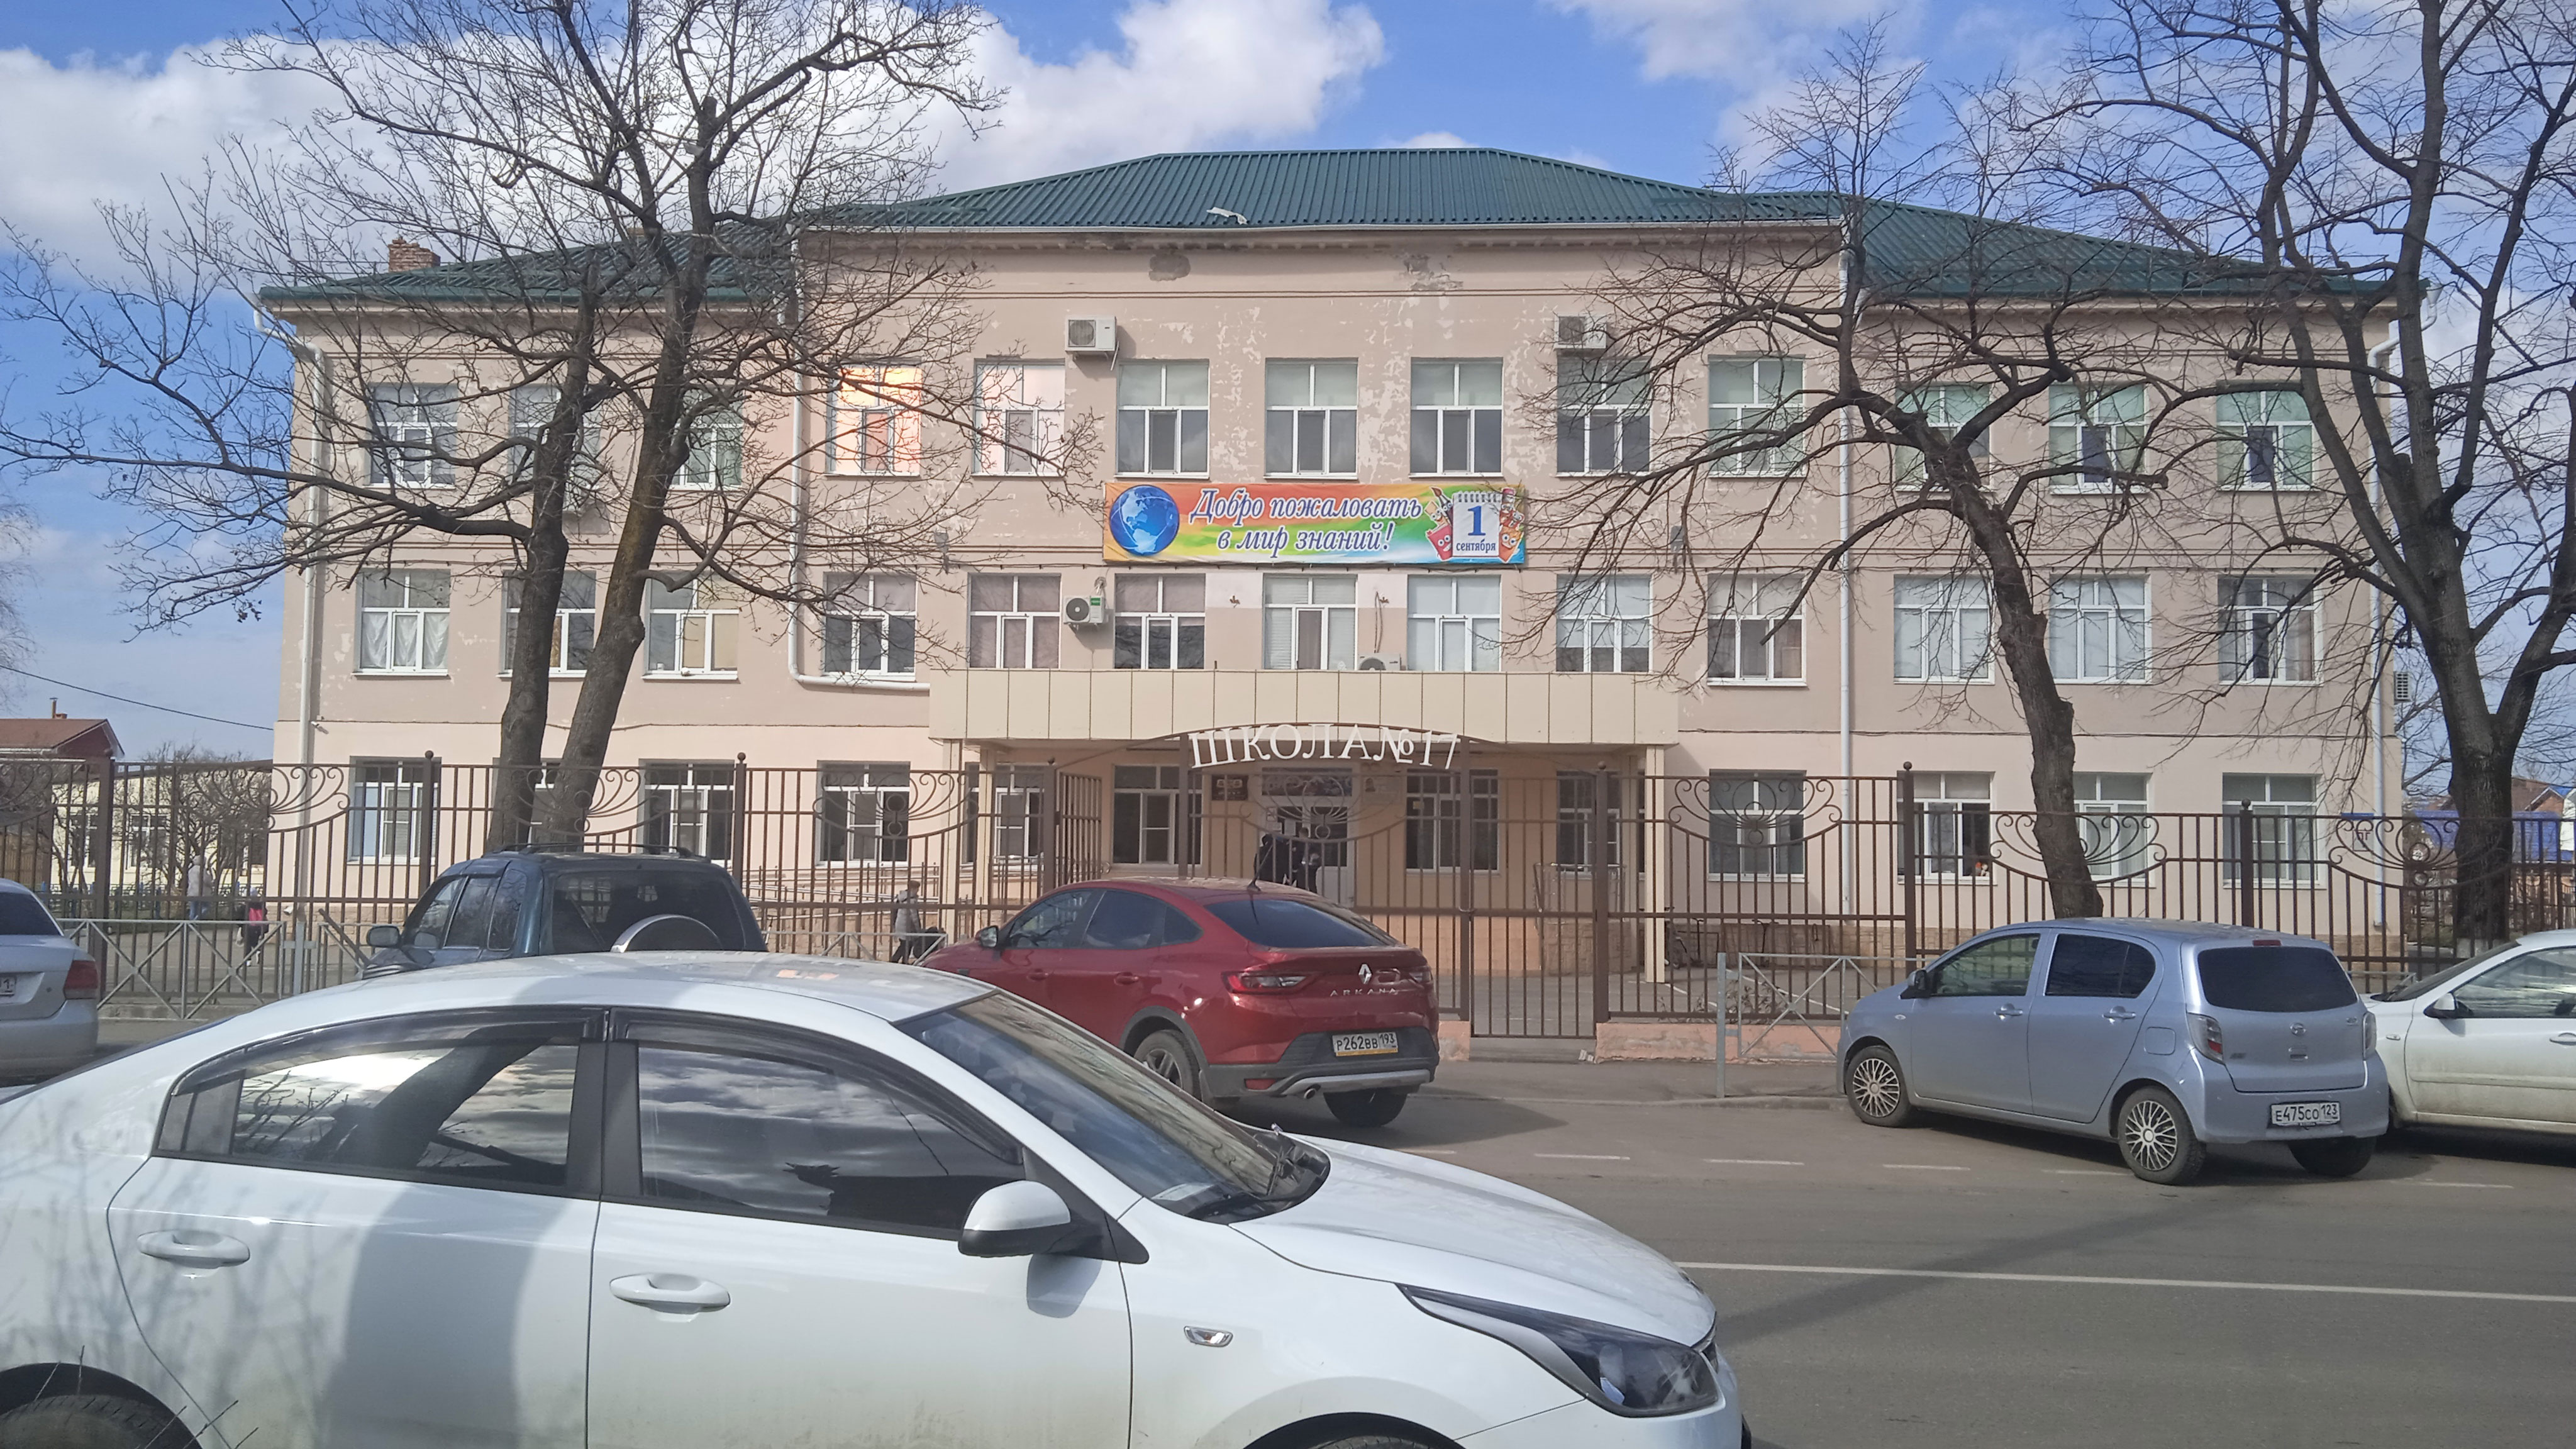 Фасад здания школы №17 г. Краснодар.